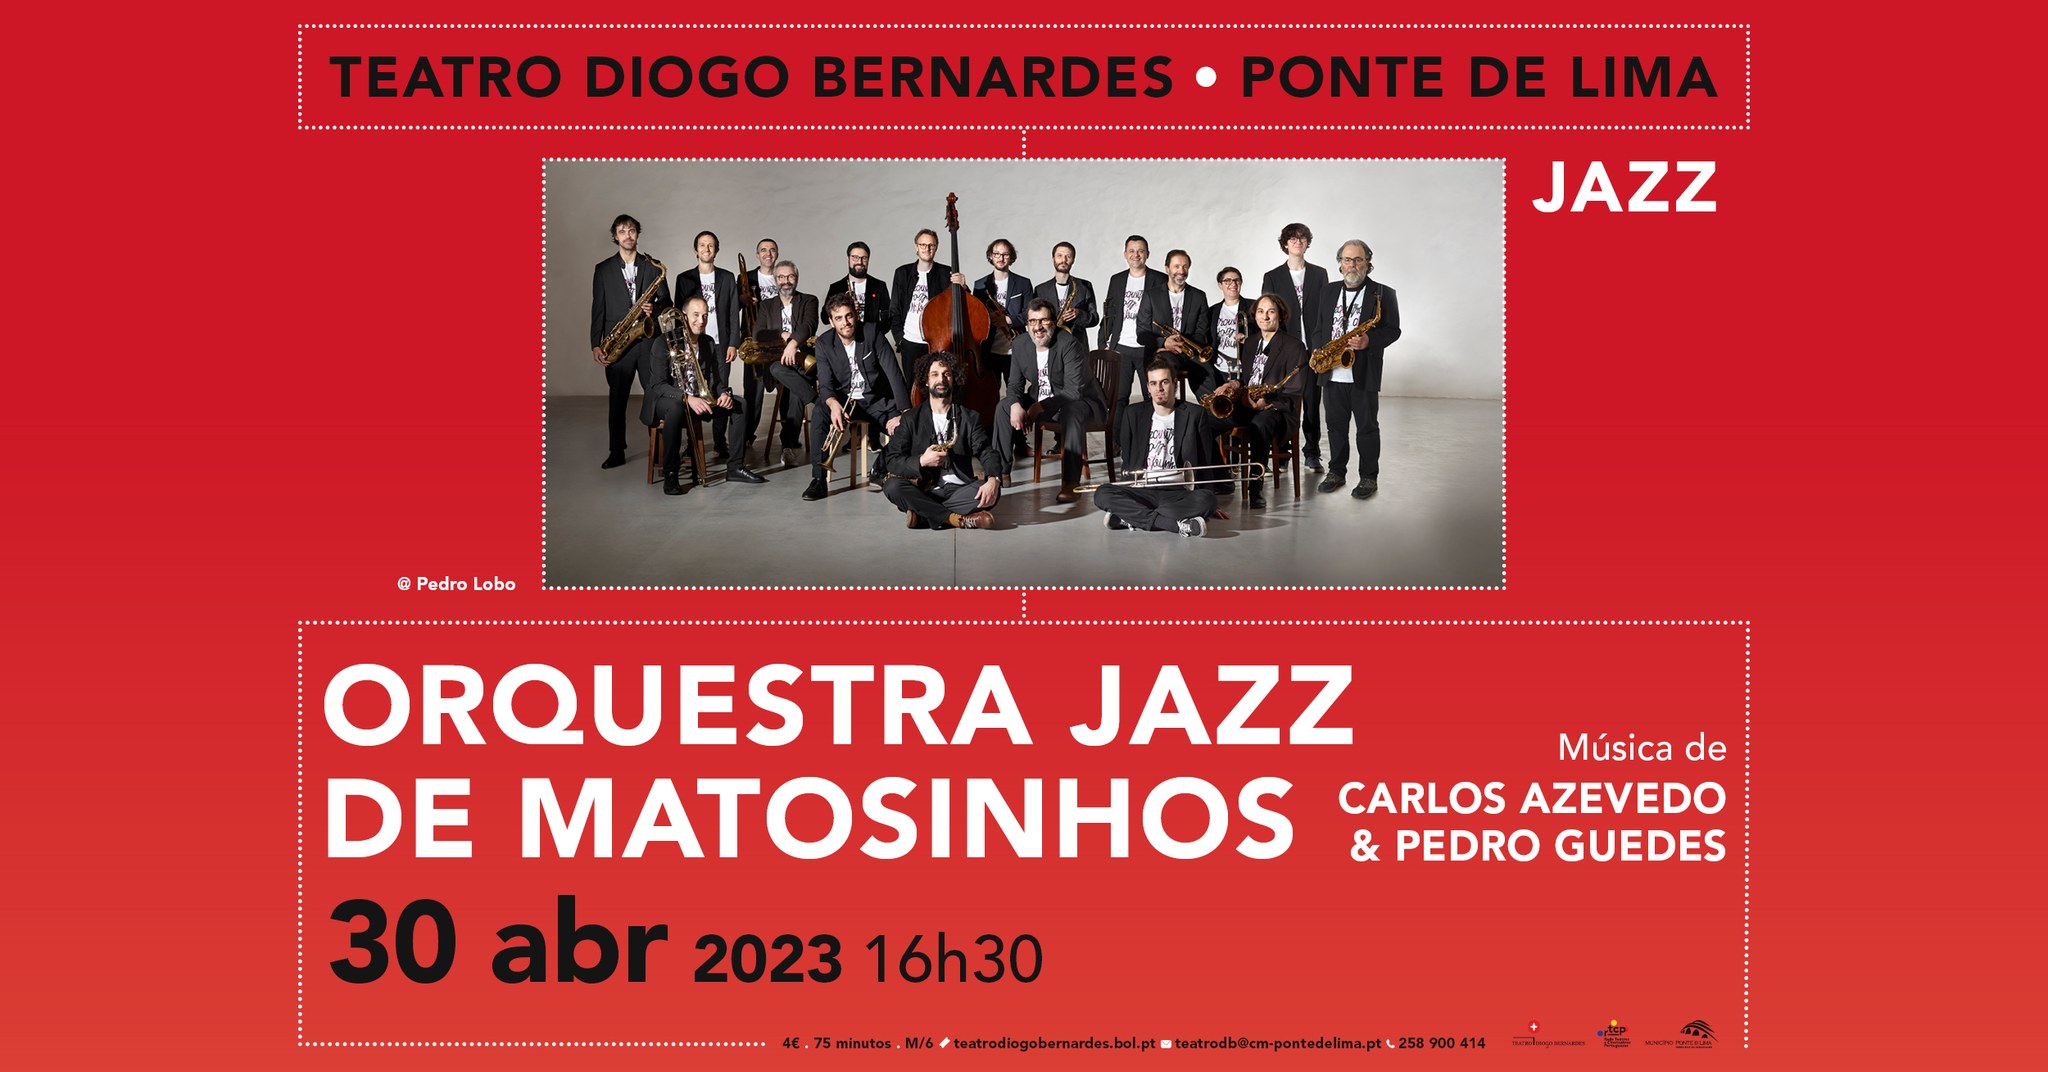 Orquestra Jazz de Matosinhos | Teatro Diogo Bernardes